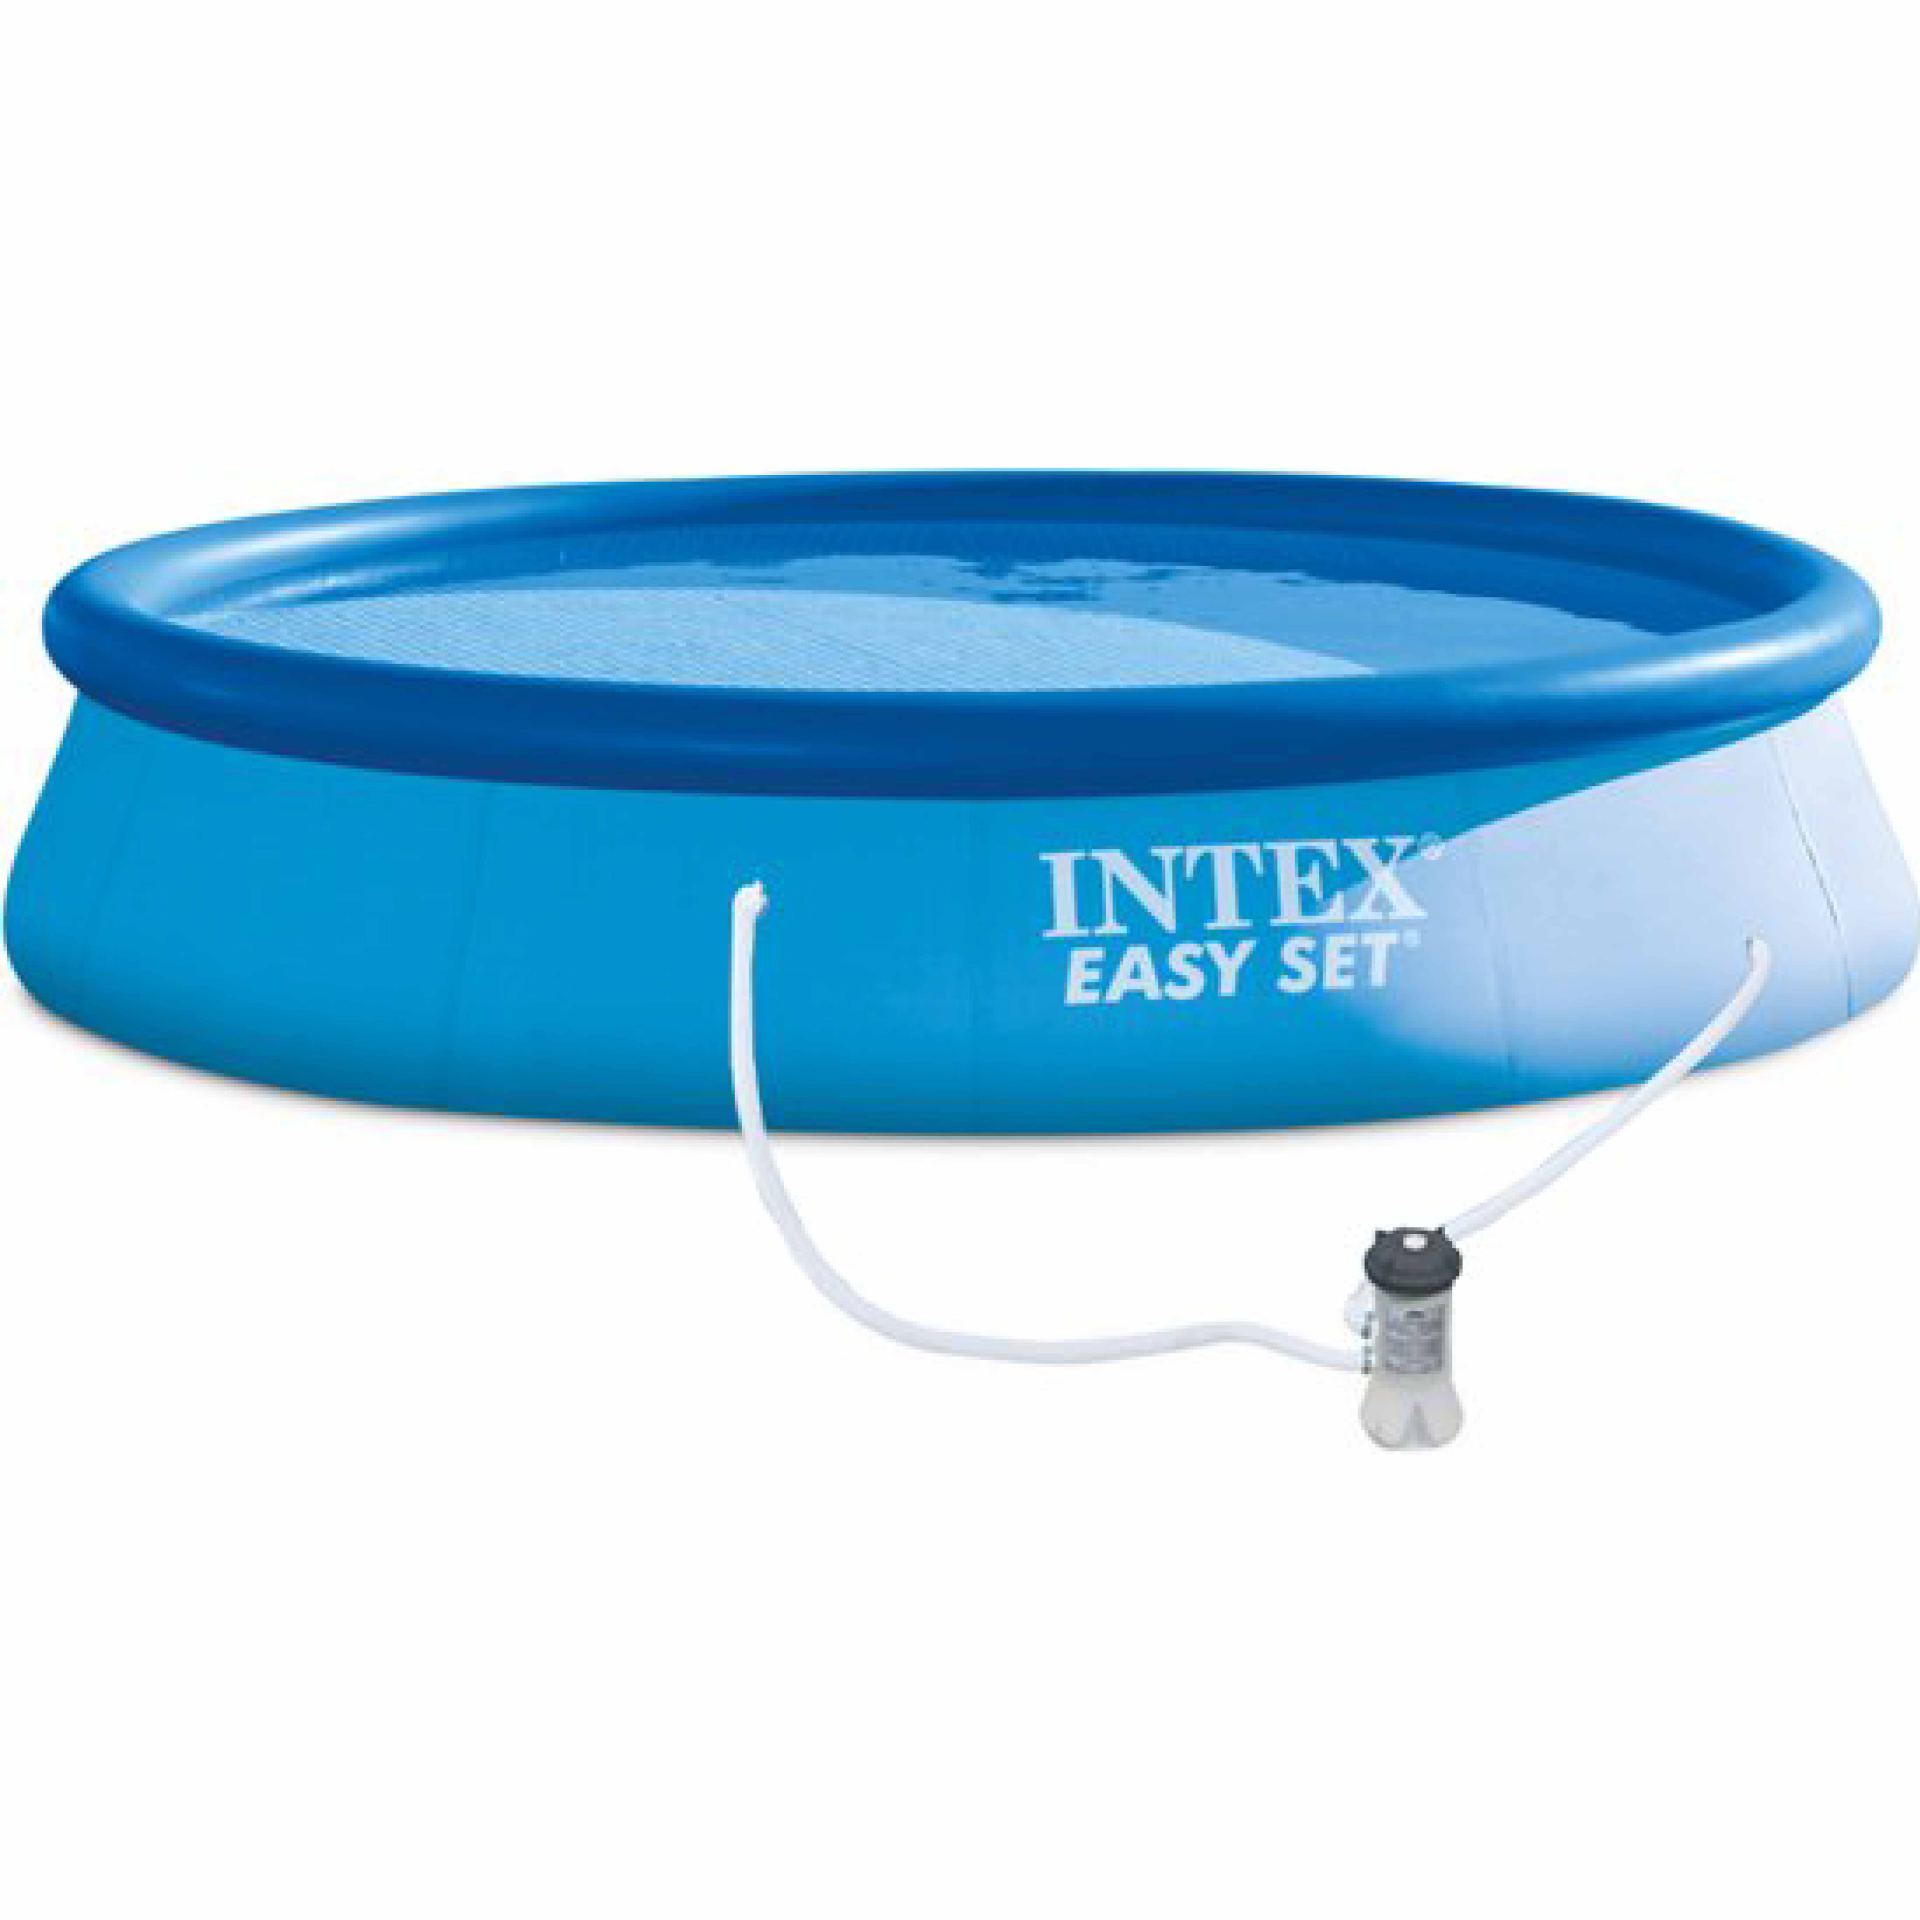 Intex easy set pool set 396cm x 84cm